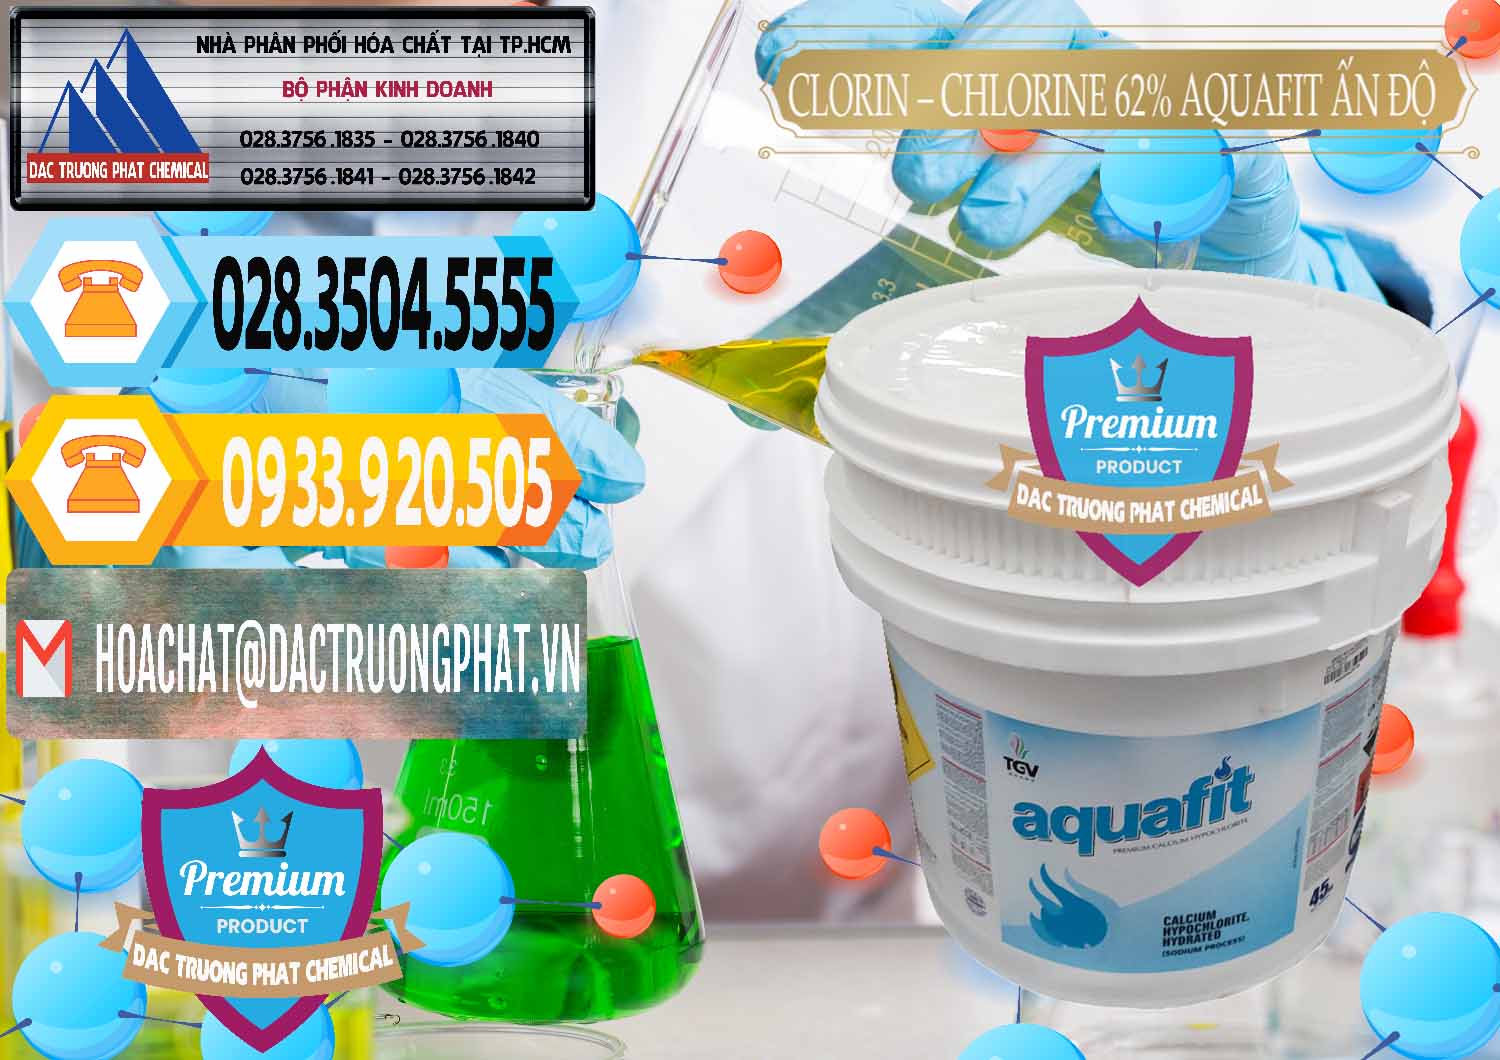 Nhà cung ứng ( bán ) Clorin - Chlorine 62% Aquafit Thùng Lùn Ấn Độ India - 0057 - Đơn vị chuyên bán và phân phối hóa chất tại TP.HCM - hoachattayrua.net